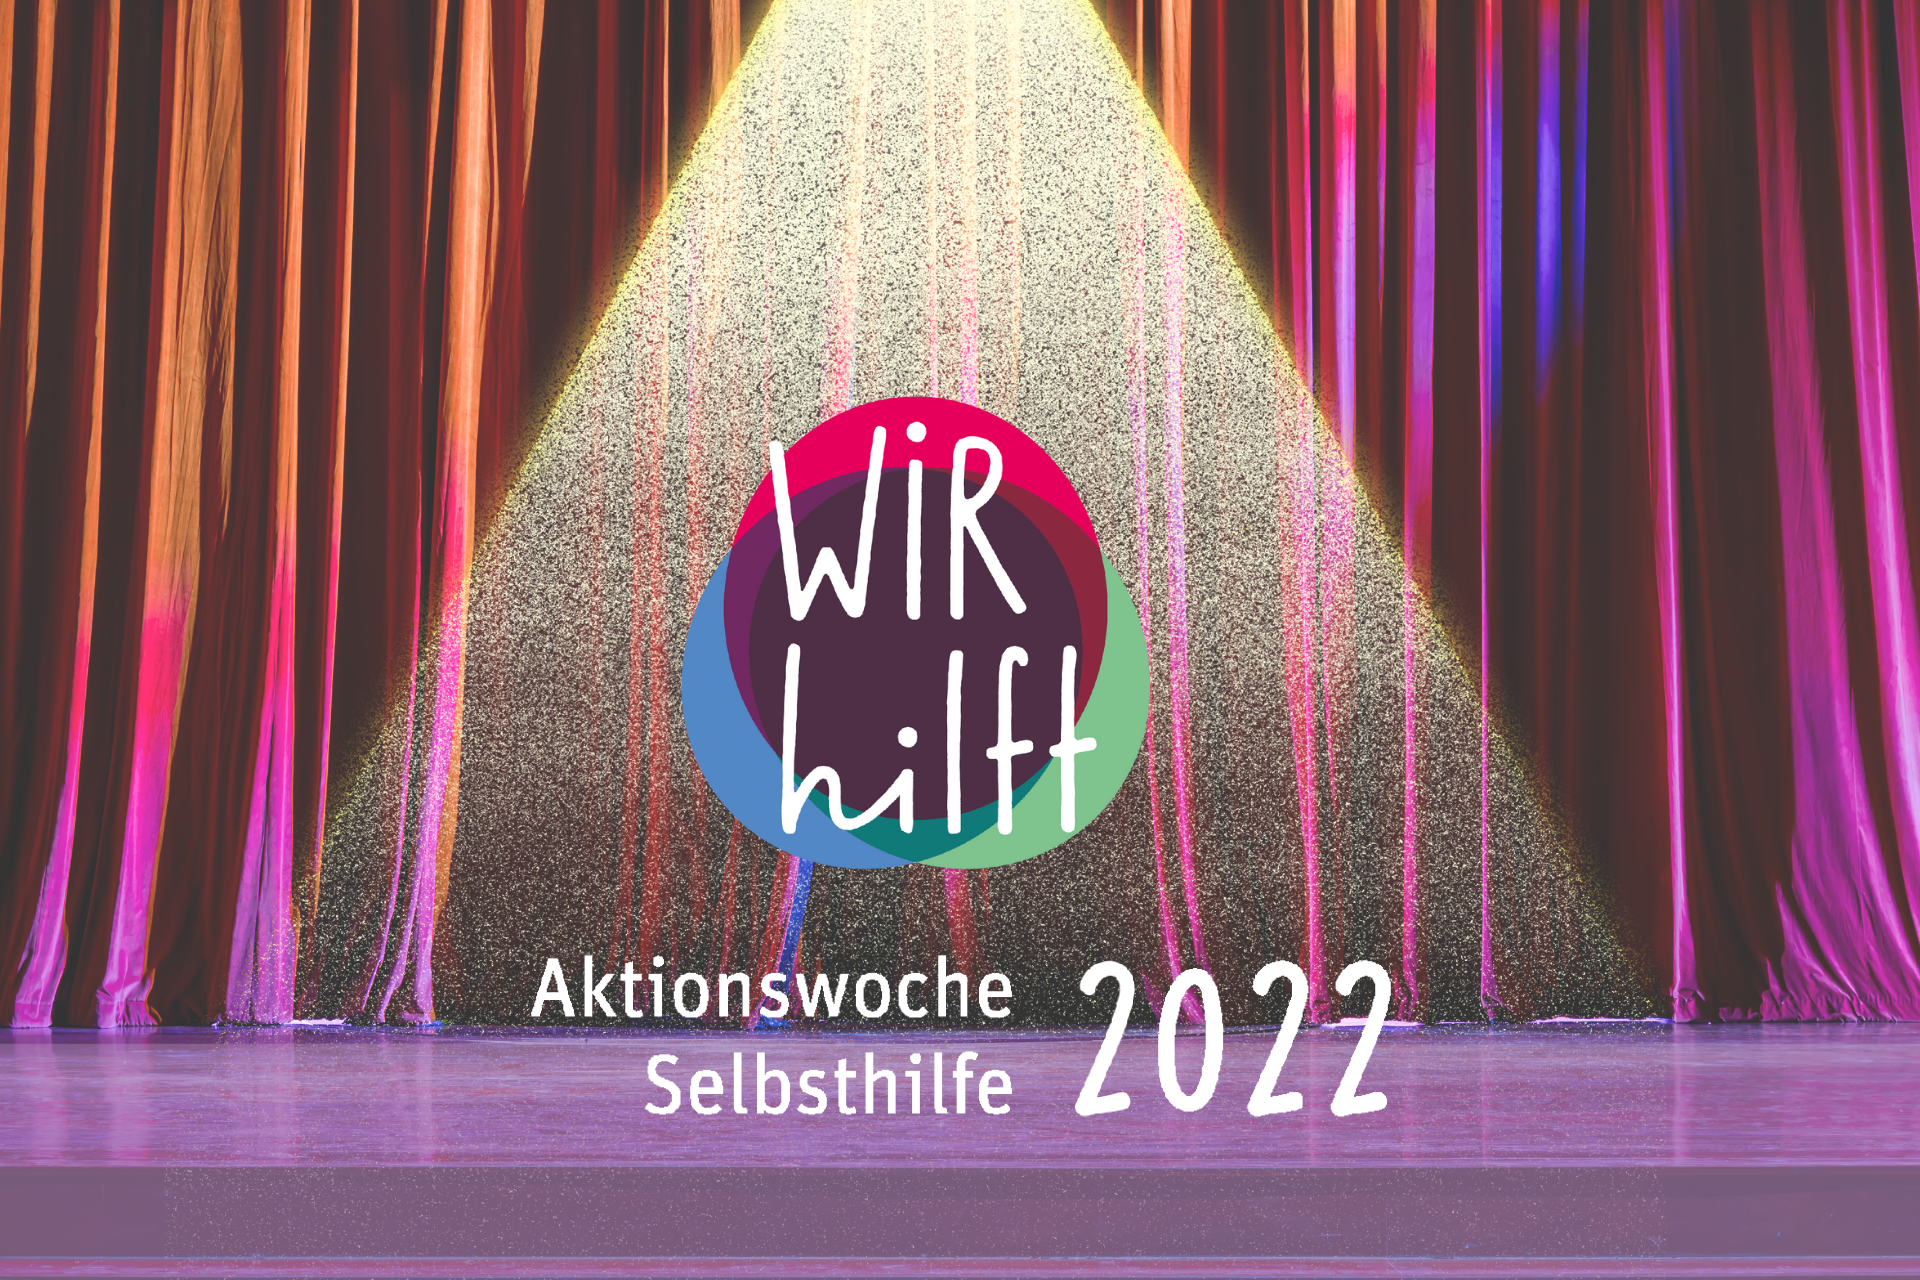 Bühne mit Logo und Text der Aktionswoche Selbsthilfe 2022